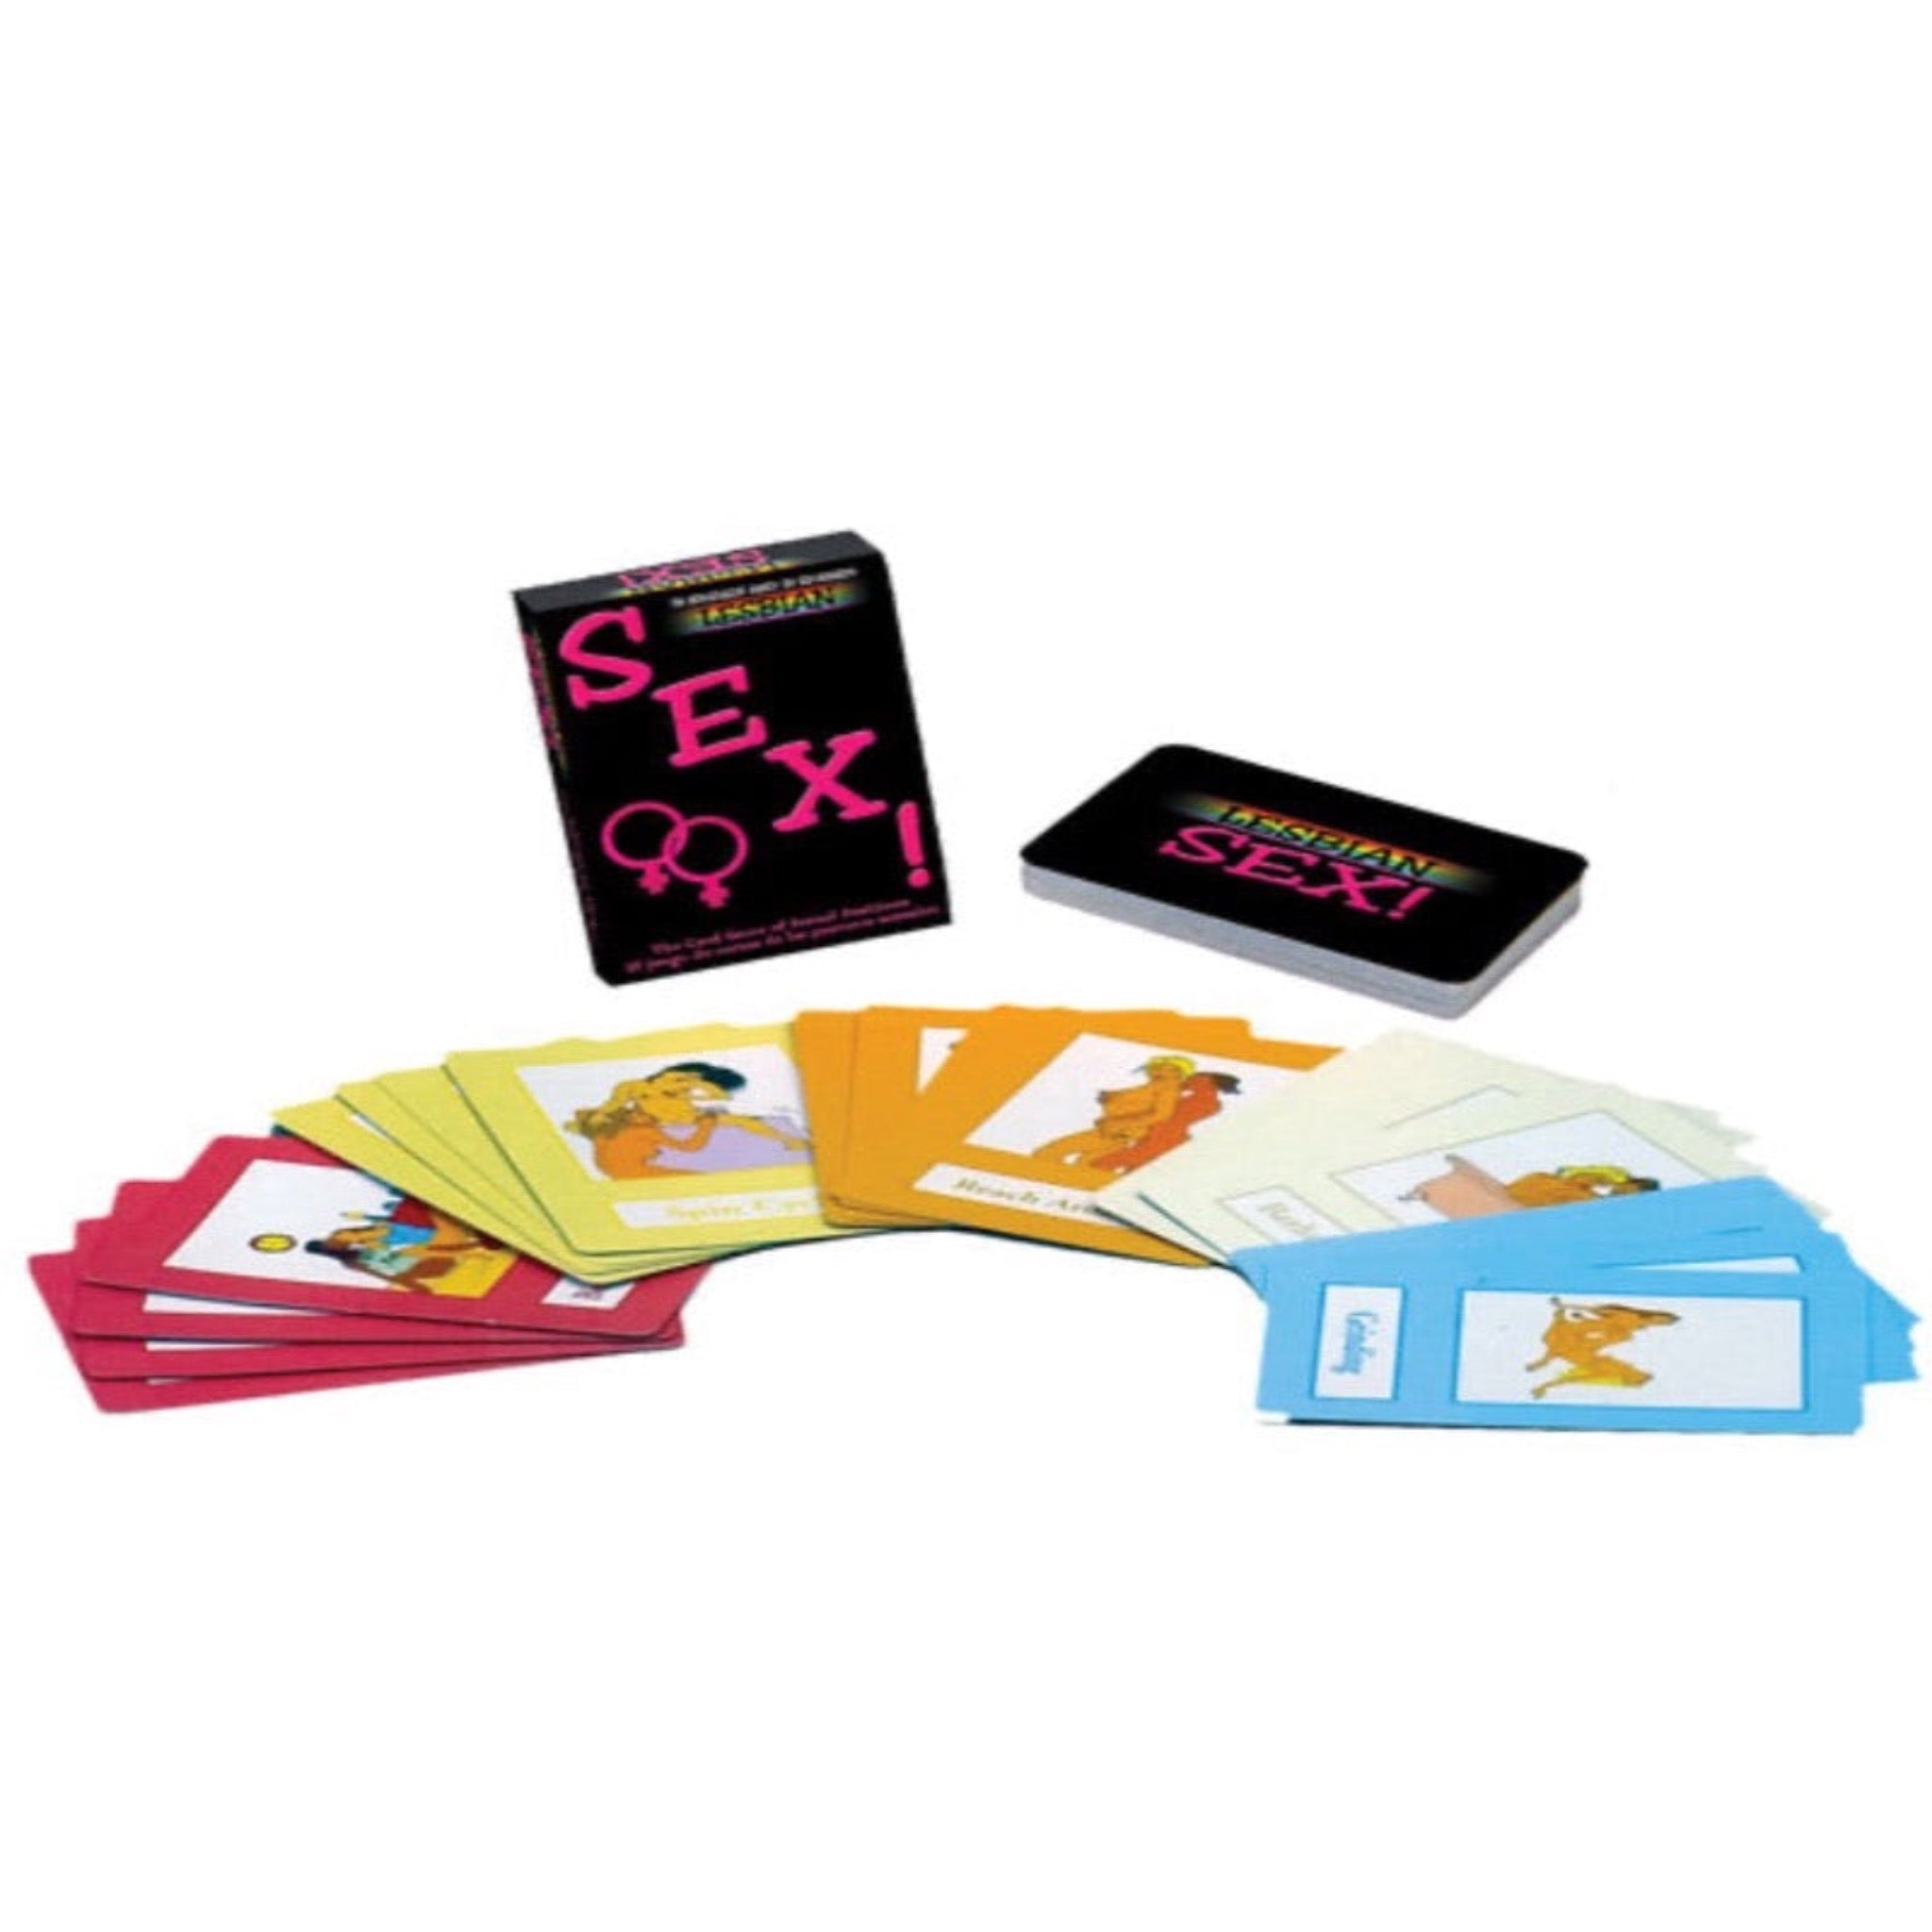 Lesbian Sex! - Card Game